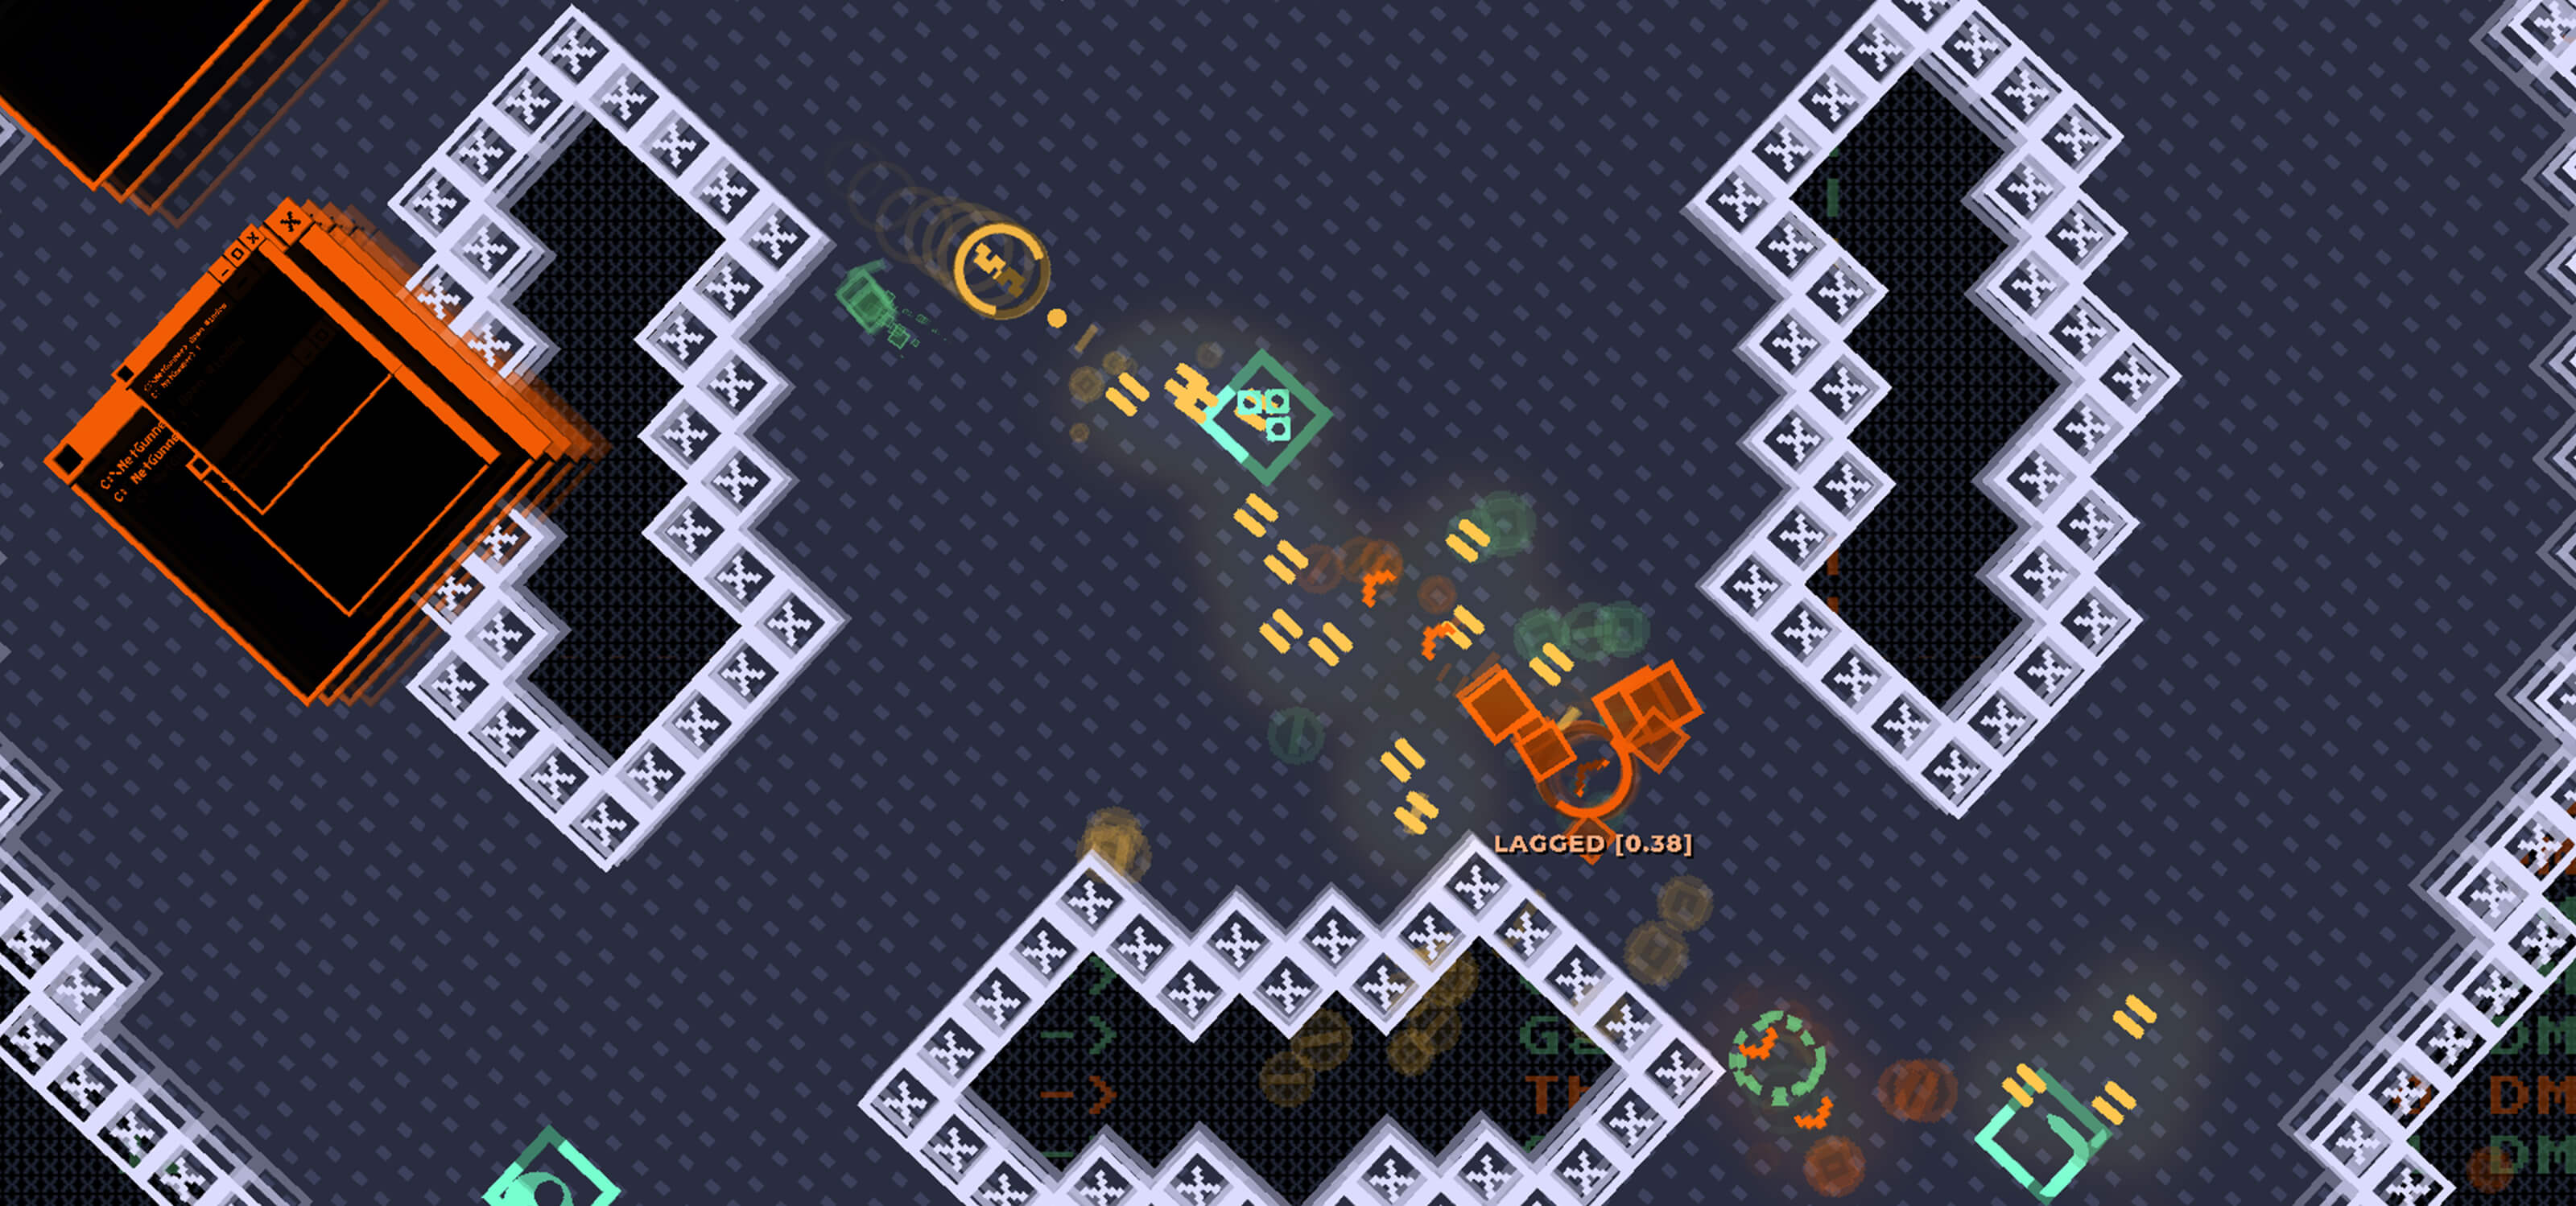 A geometric, pixel art screenshot from DigiPen student game Netgunner.